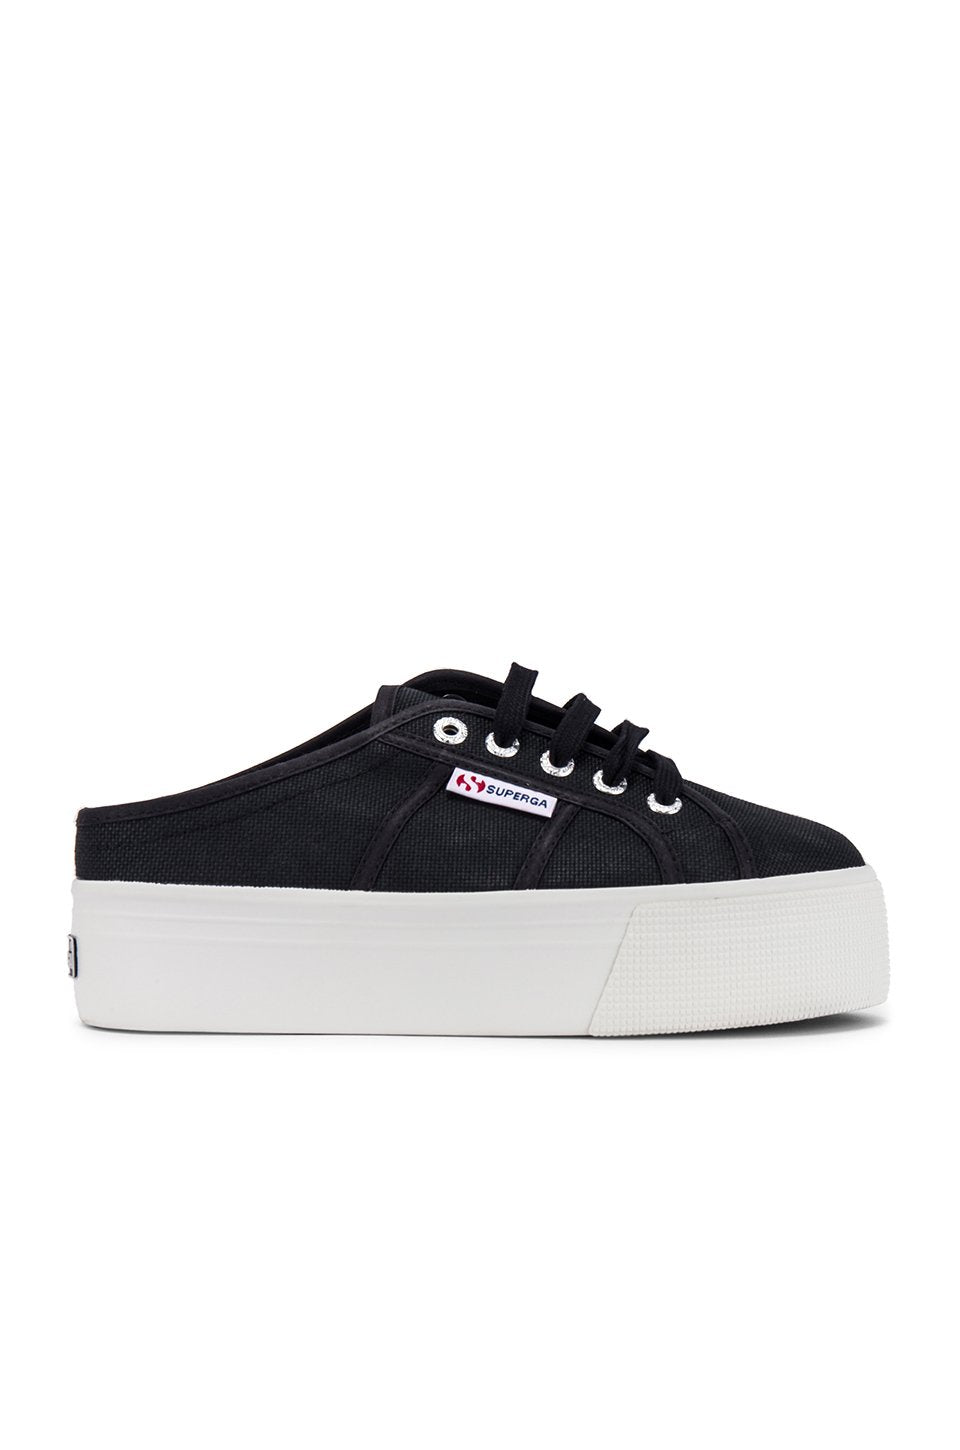 2284 COTW Sneaker in Black \u0026 White 